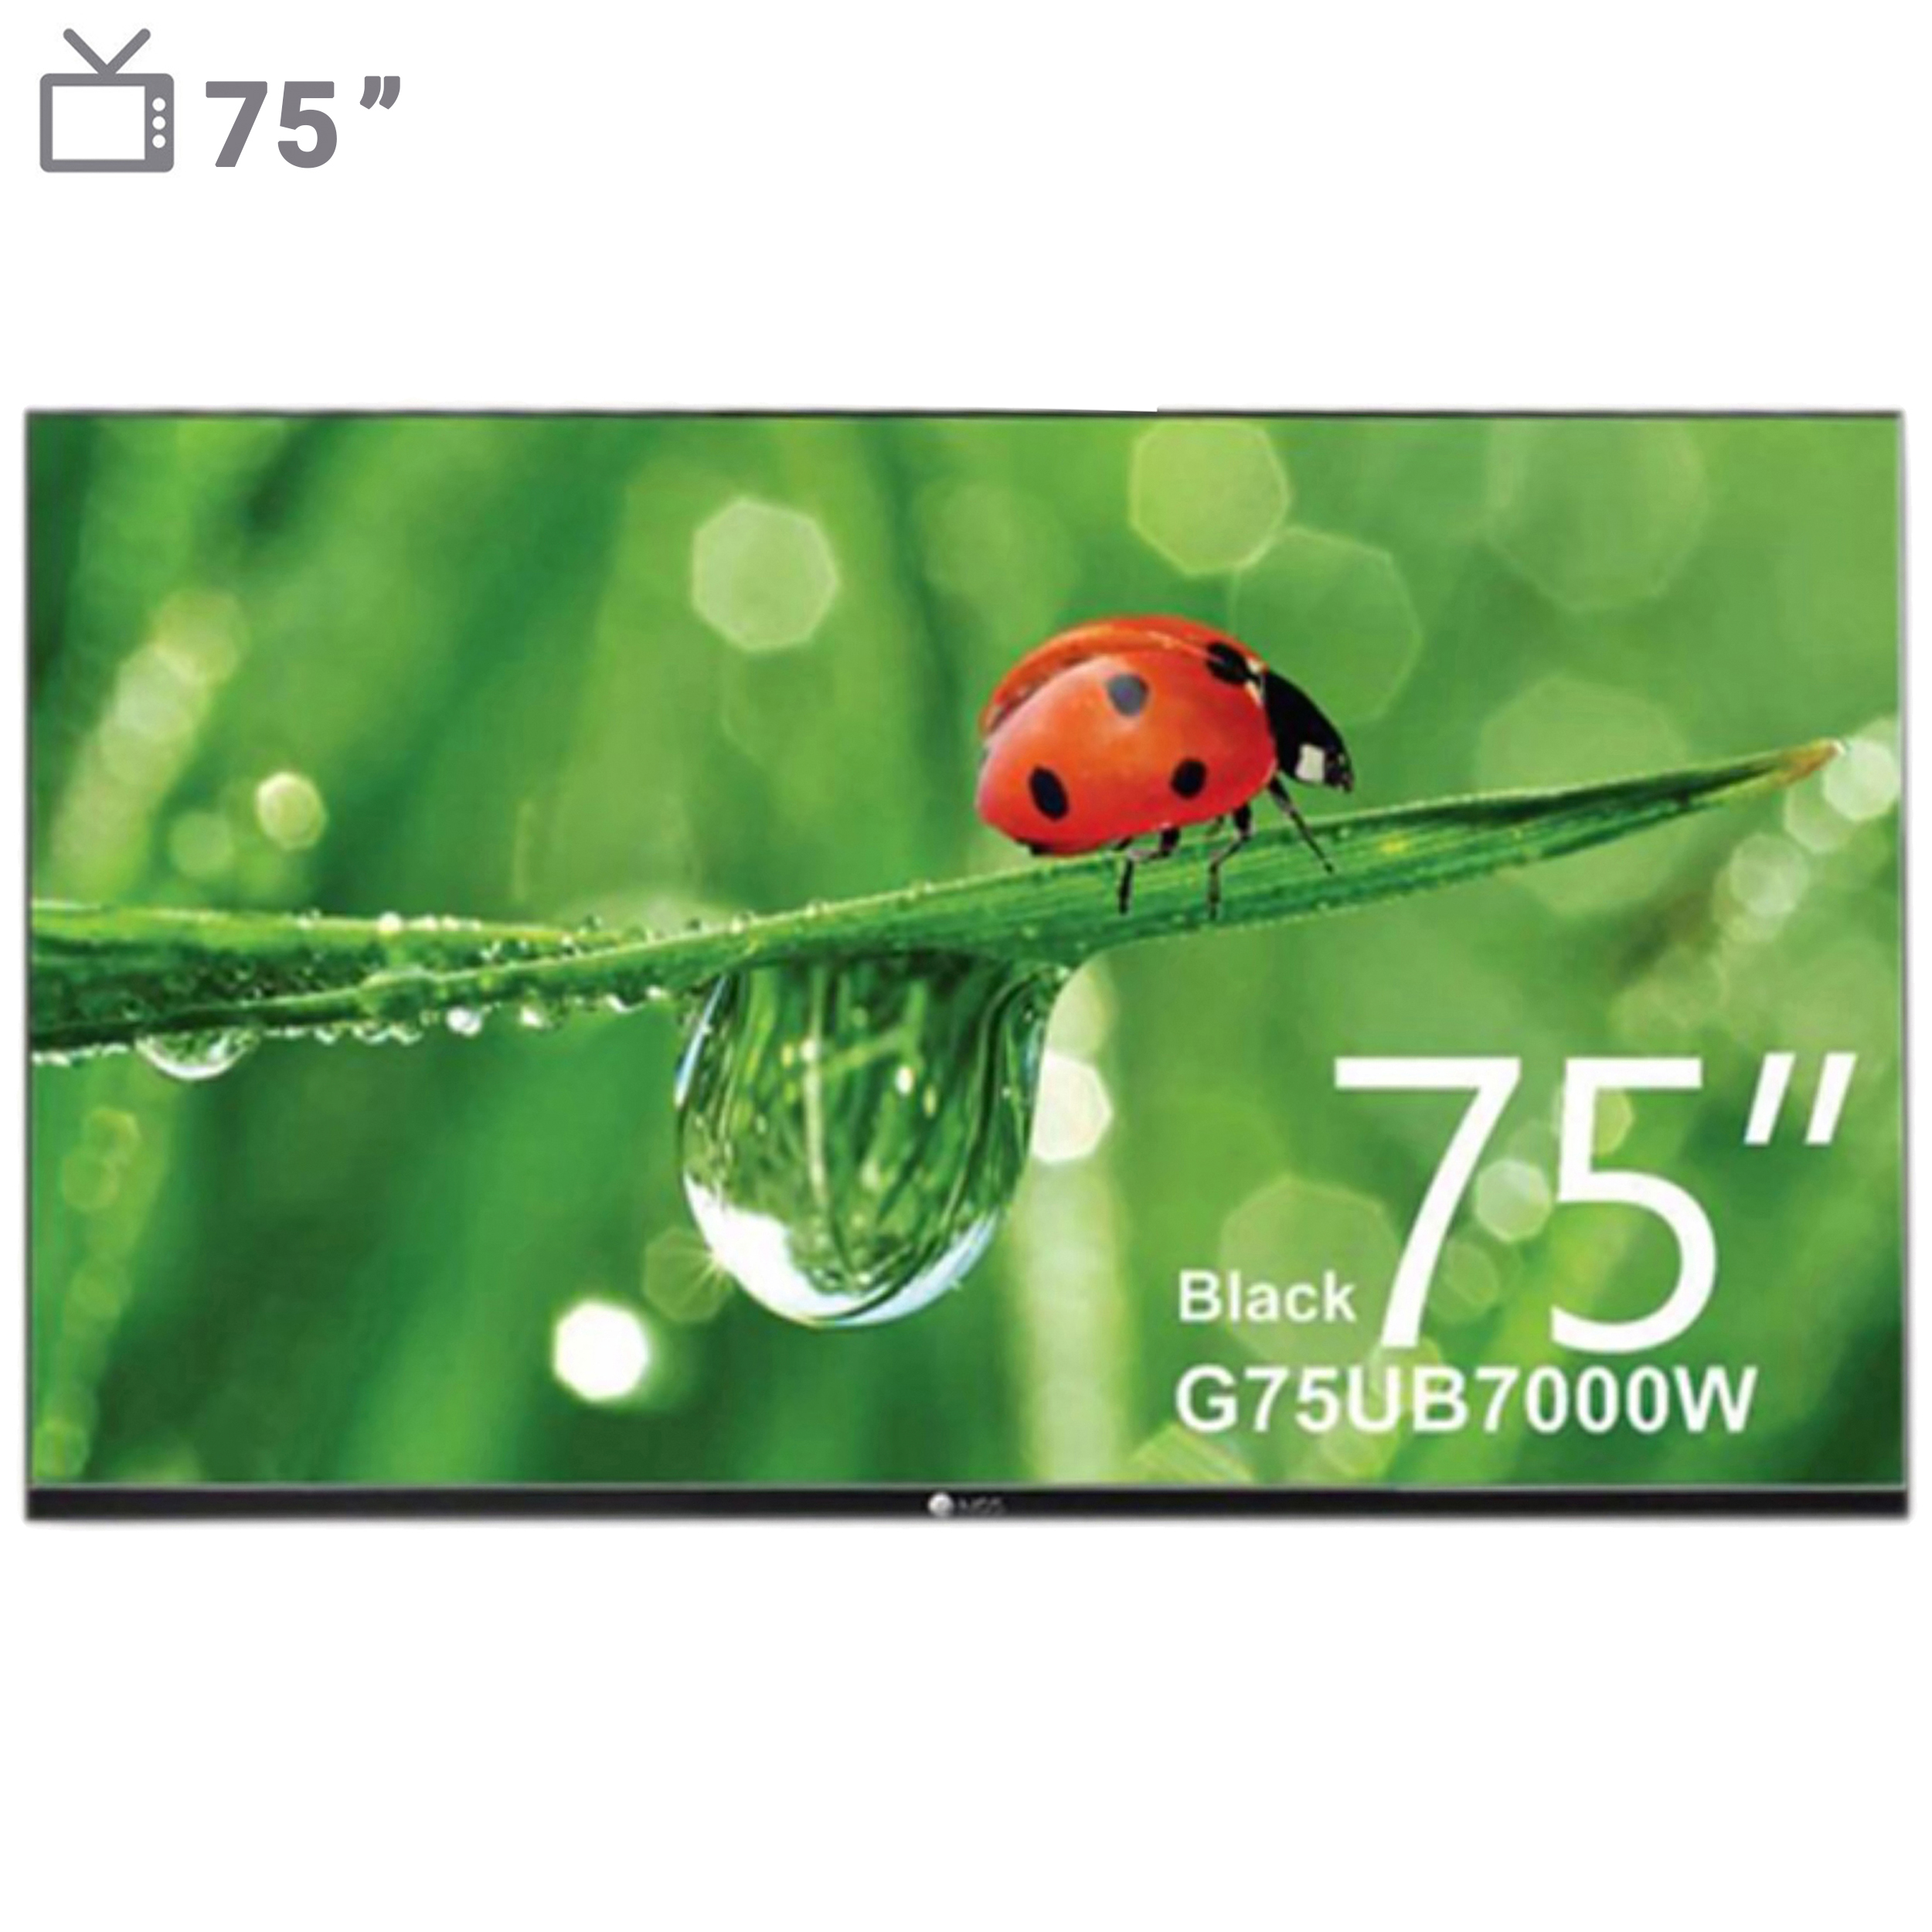 قیمت و خرید تلویزیون ال ای دی فوق هوشمند ام جی اس مدل G75UB7000W سایز 75اینچ به همراه اشتراک 3 ماهه نماوا